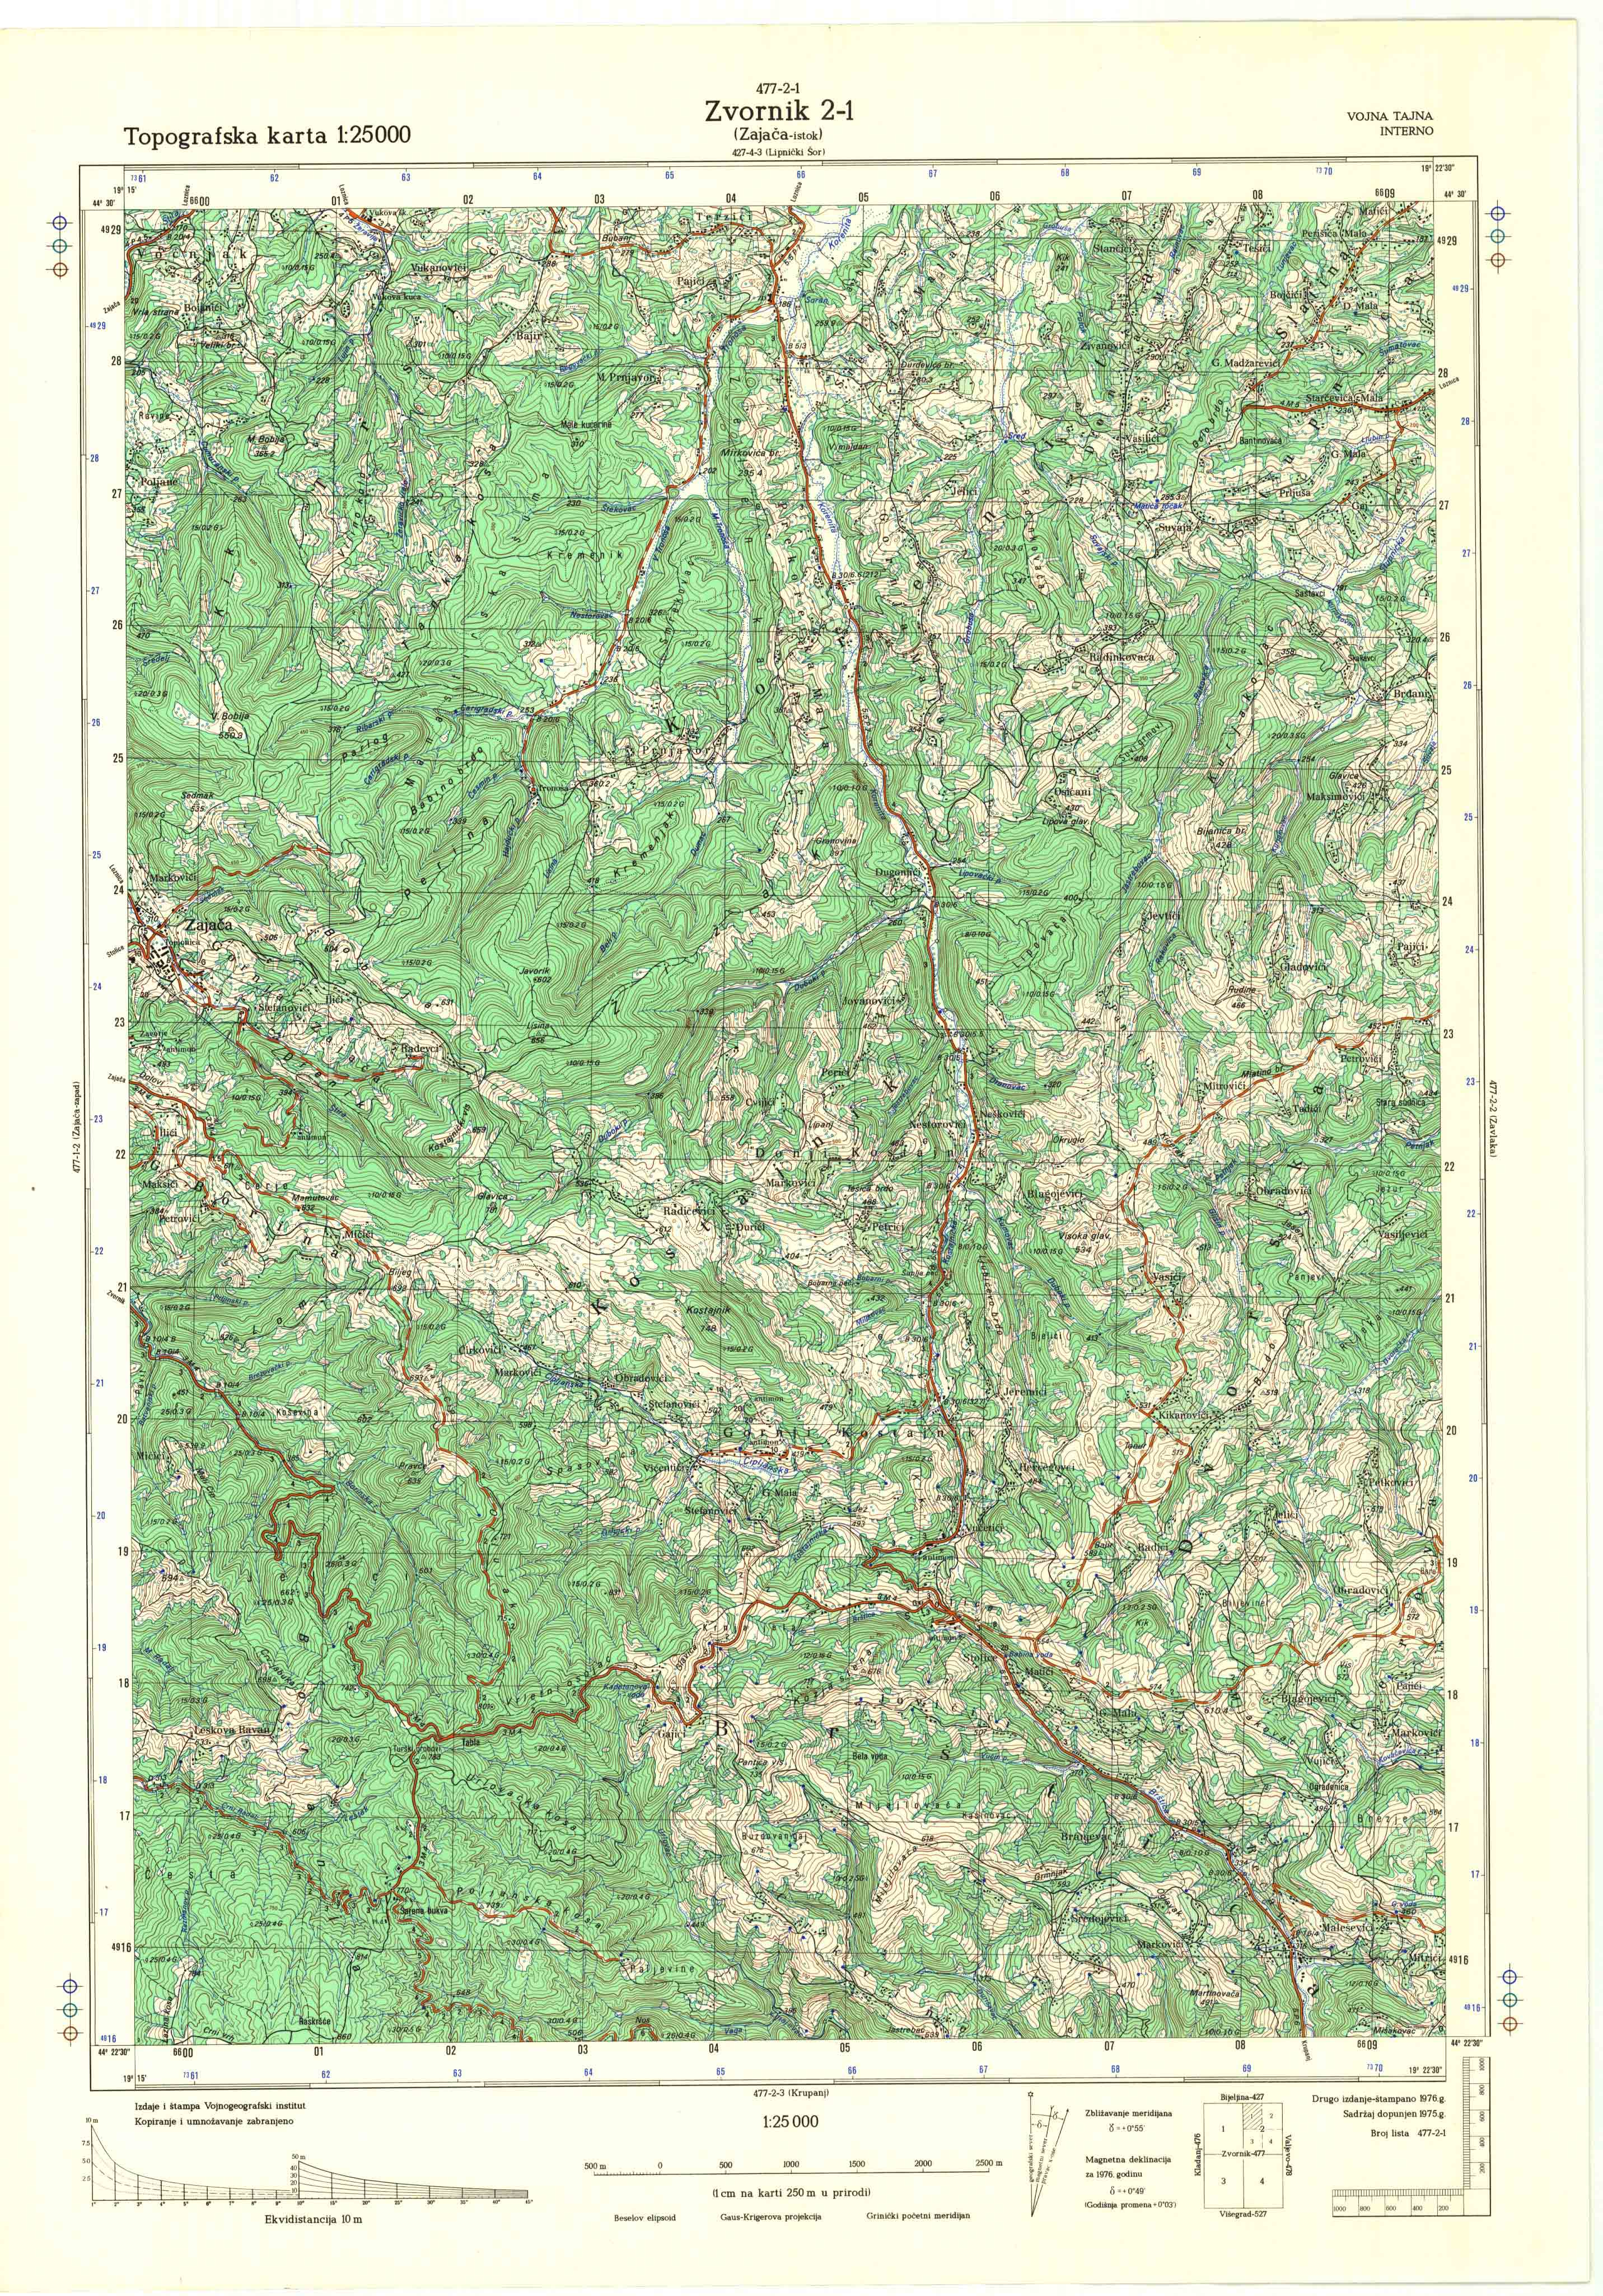  topografska karta srbije 25000 JNA  Zvornik